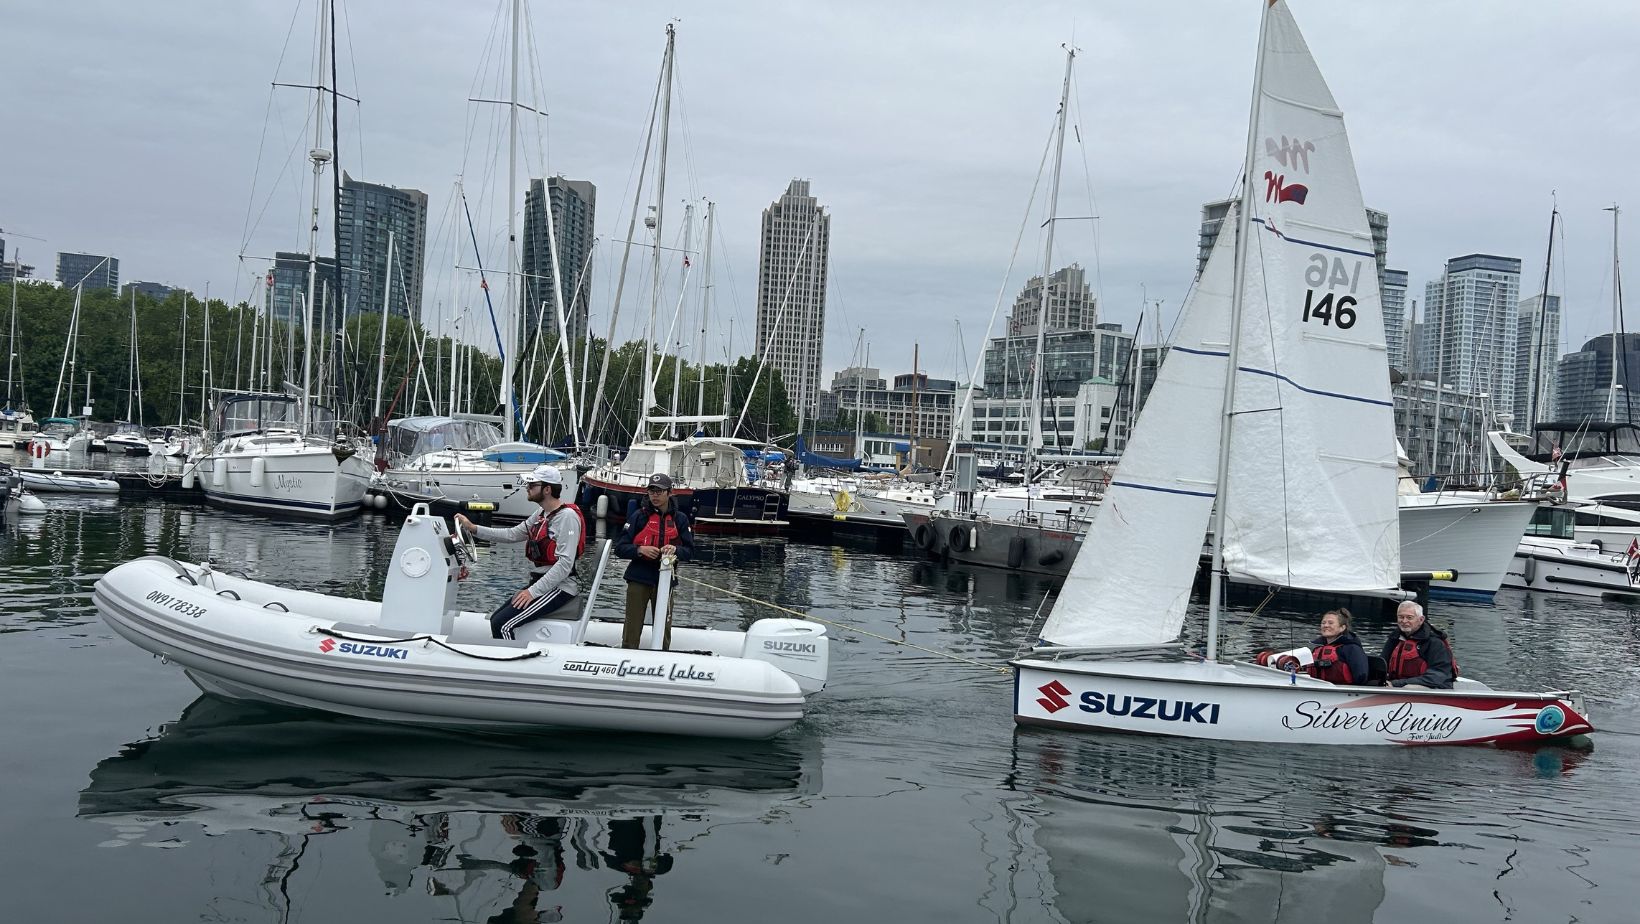 Suzuki Canada Soutiendra les événements d’Able Sail Toronto et de la Coupe mobilité jusqu’en 2026 !